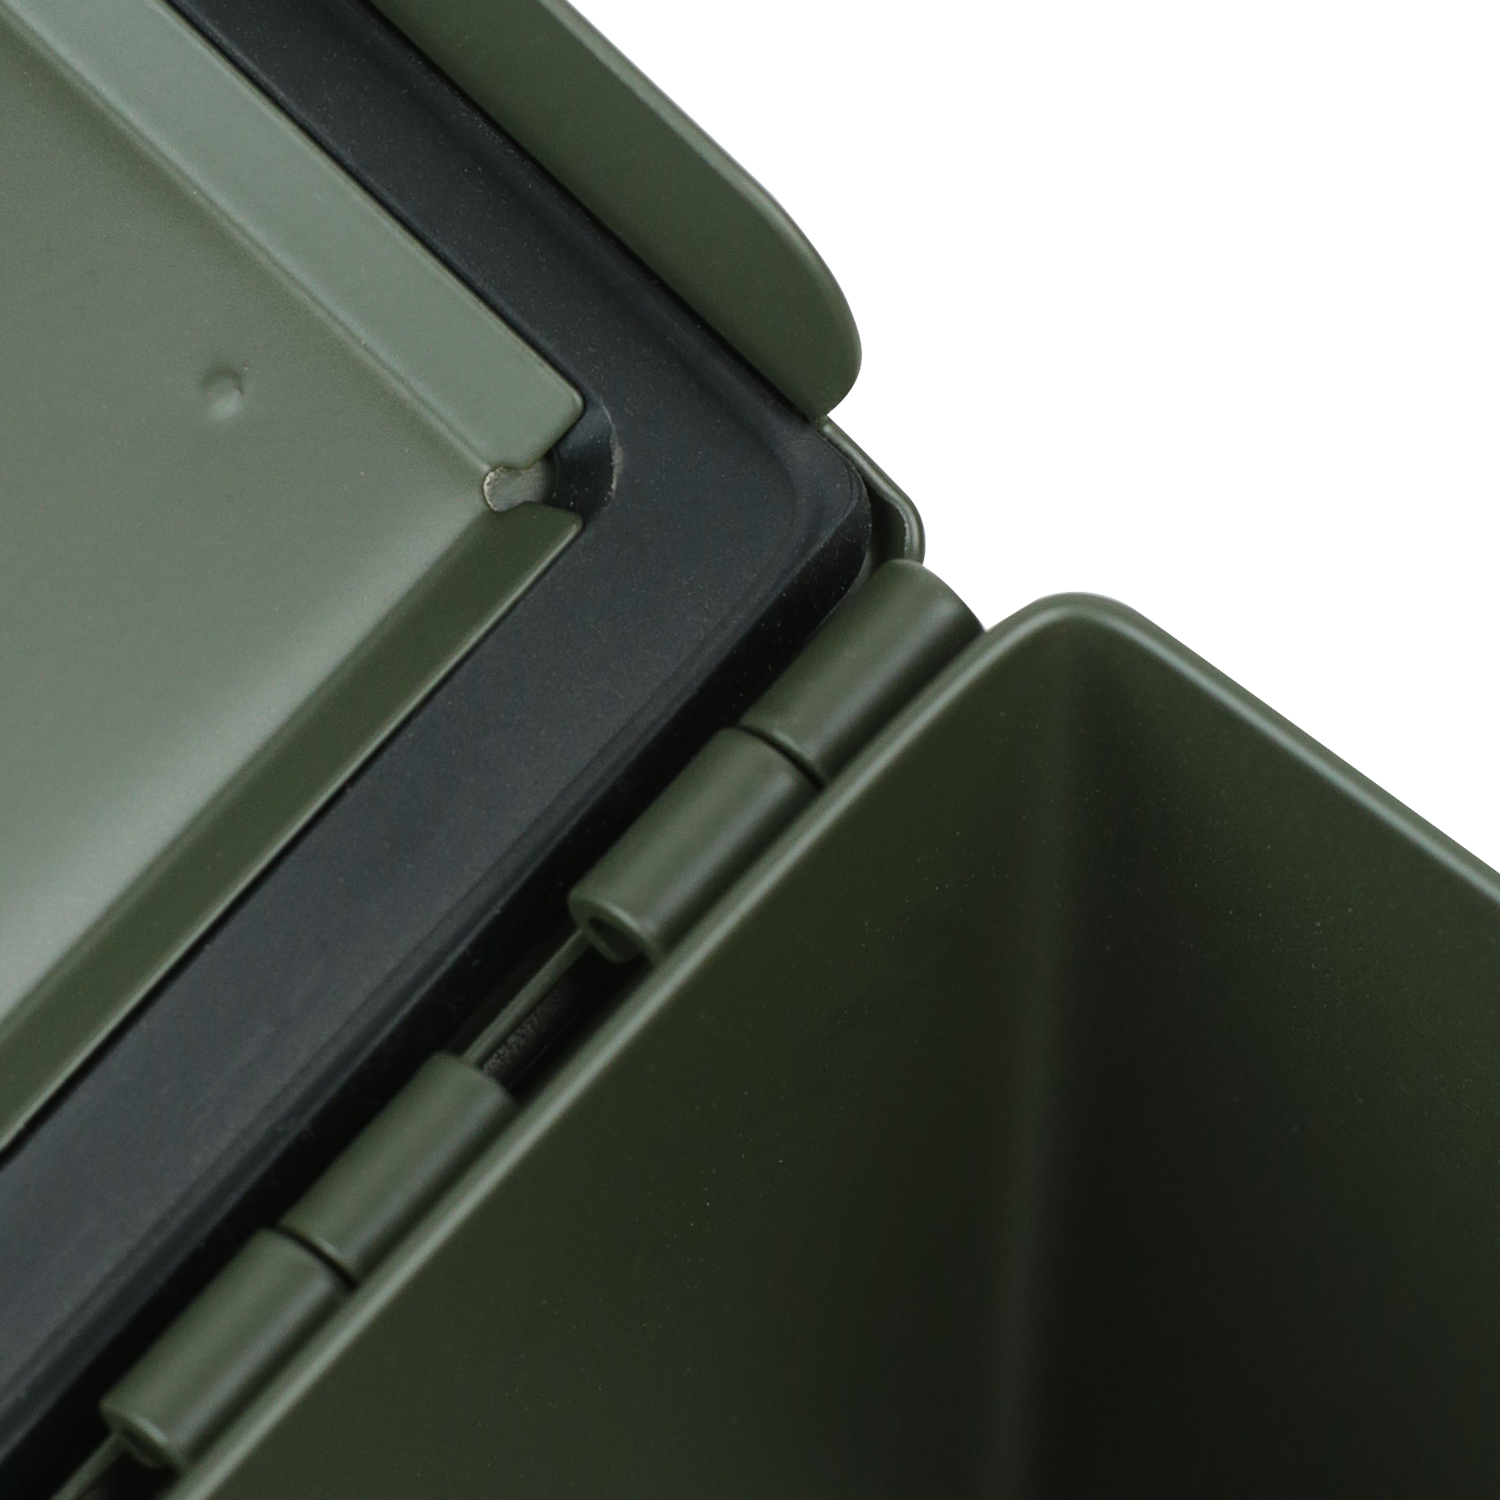 US Ammo Box als Munitionskoffer aus Metall von HMF mit den Maßen 30 x 19 x 15.5 cm in grün